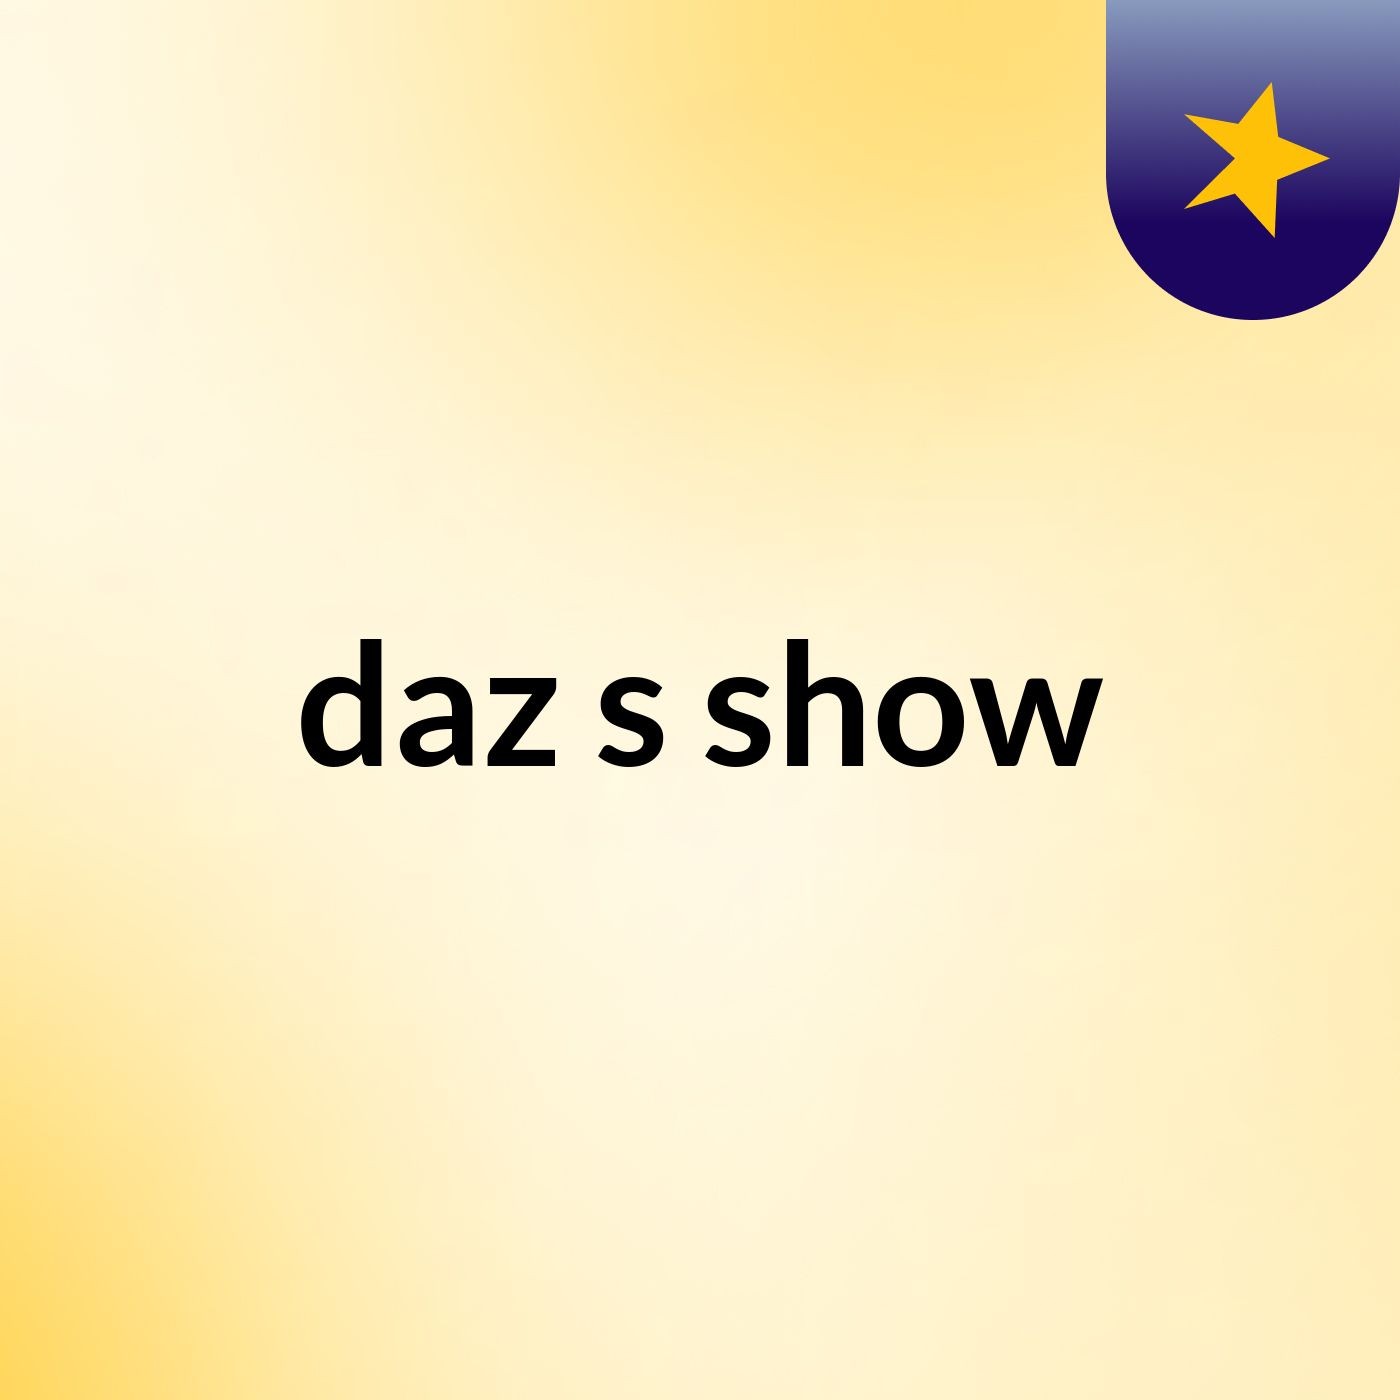 daz's show